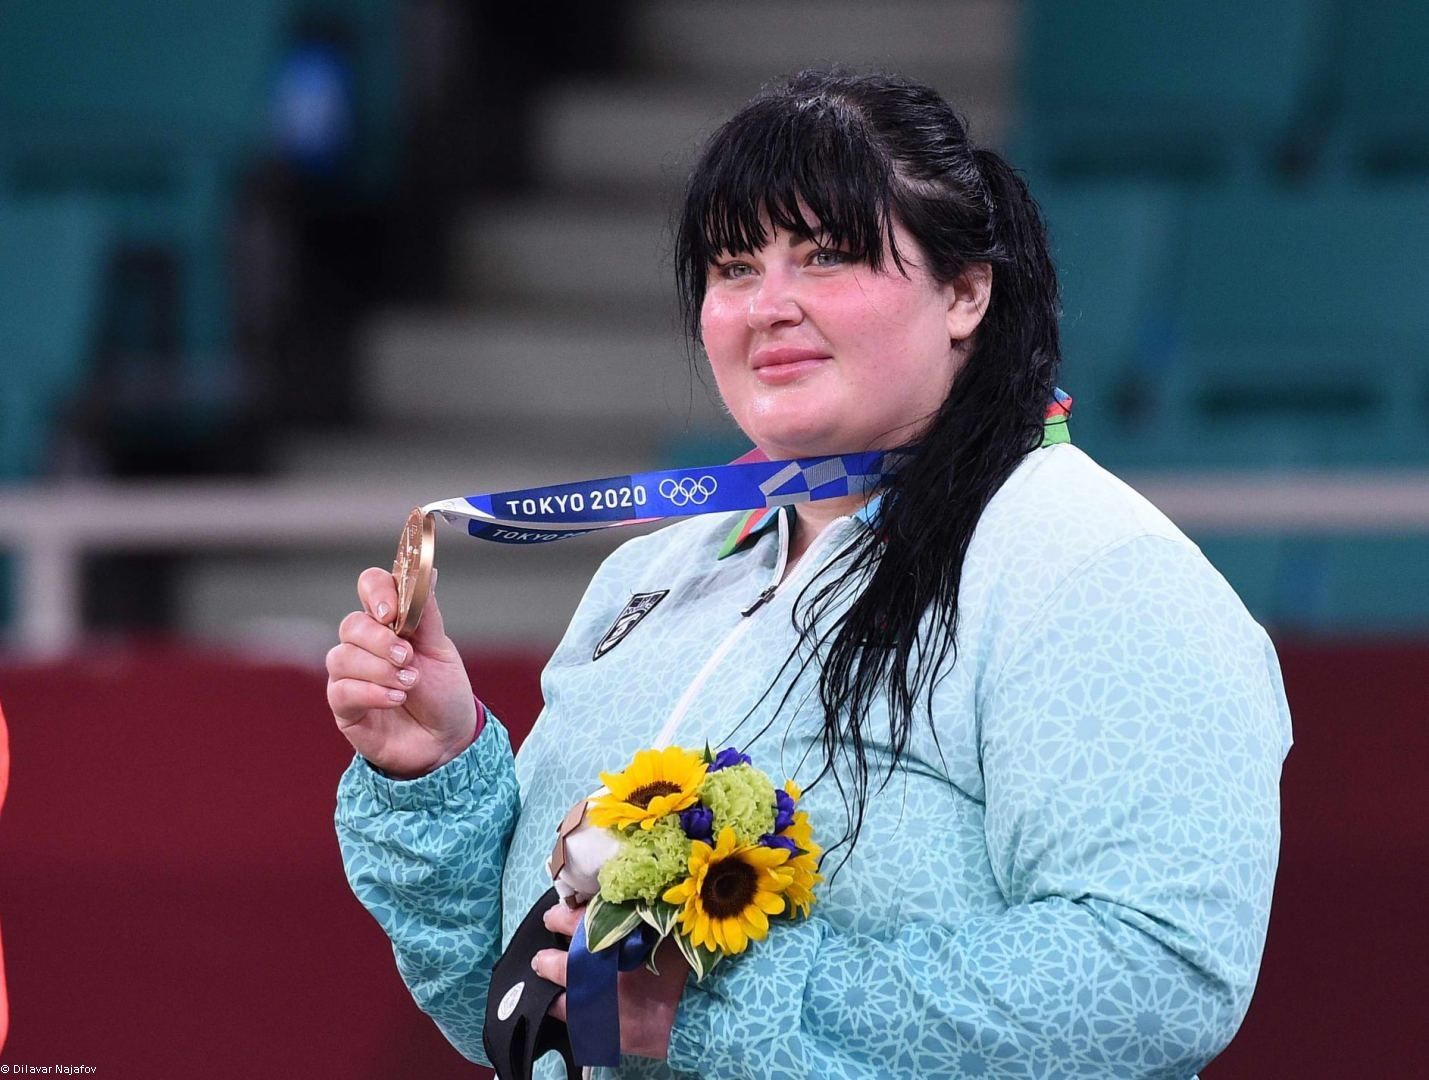 Le meilleur cadeau d'anniversaire pour une judoka azerbaïdjanaise aux Jeux Olympiques de Tokyo